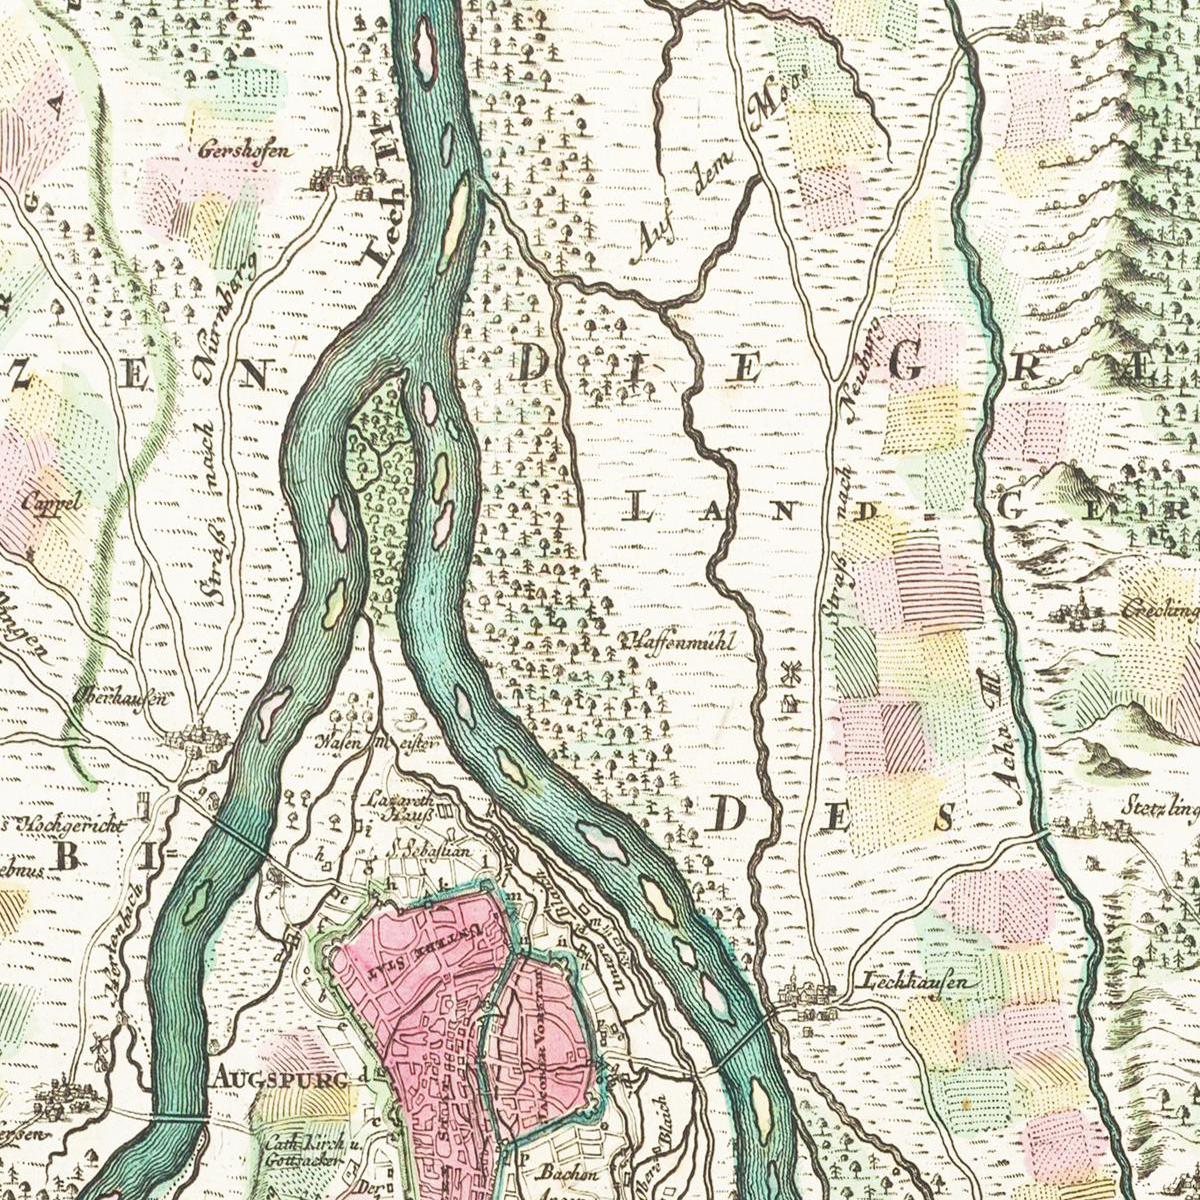 Historische Landkarte Augsburg um 1750